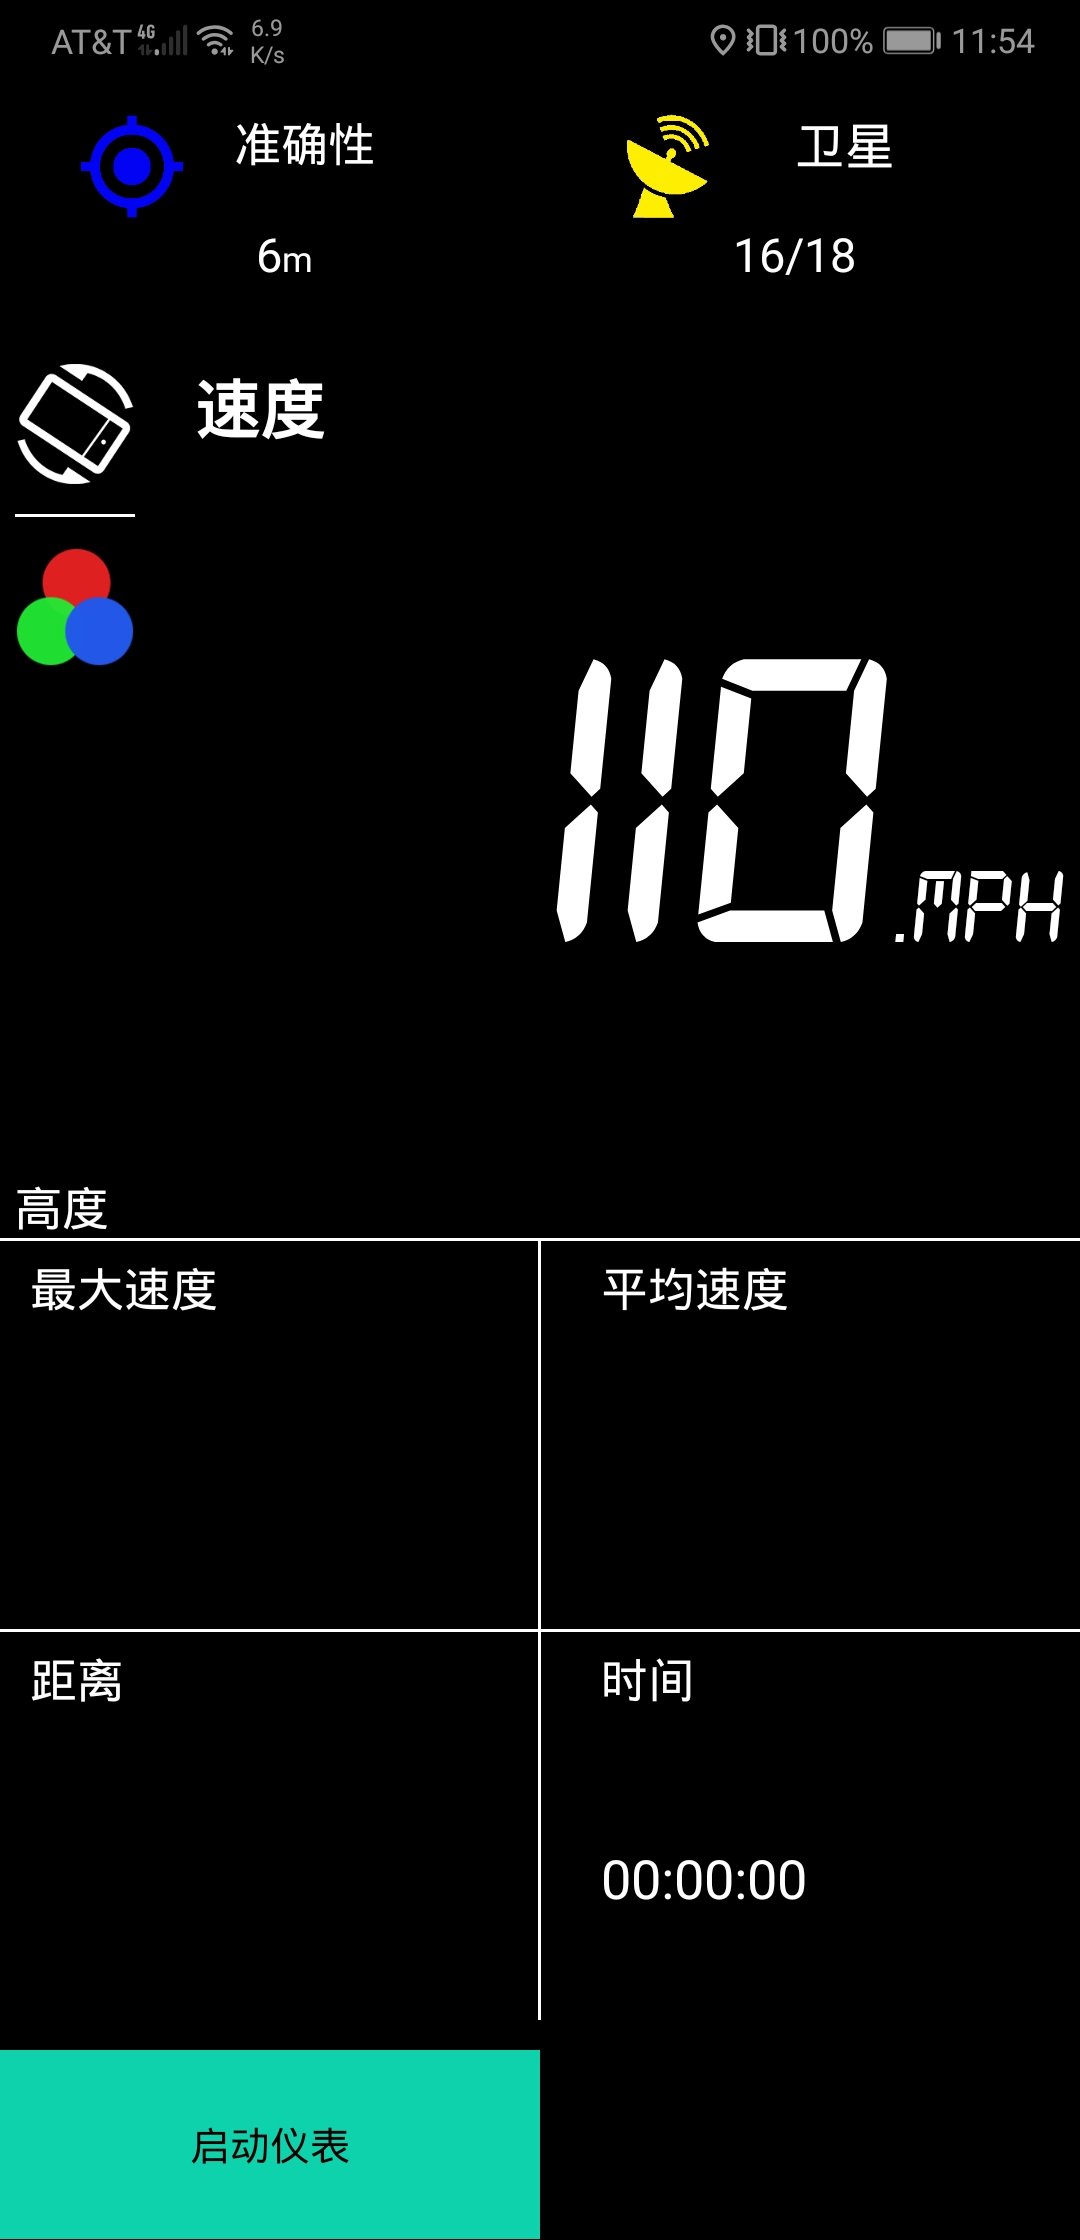 全程最高时速(换算为公制单位为176 km/h，这个速度并不能持续很久